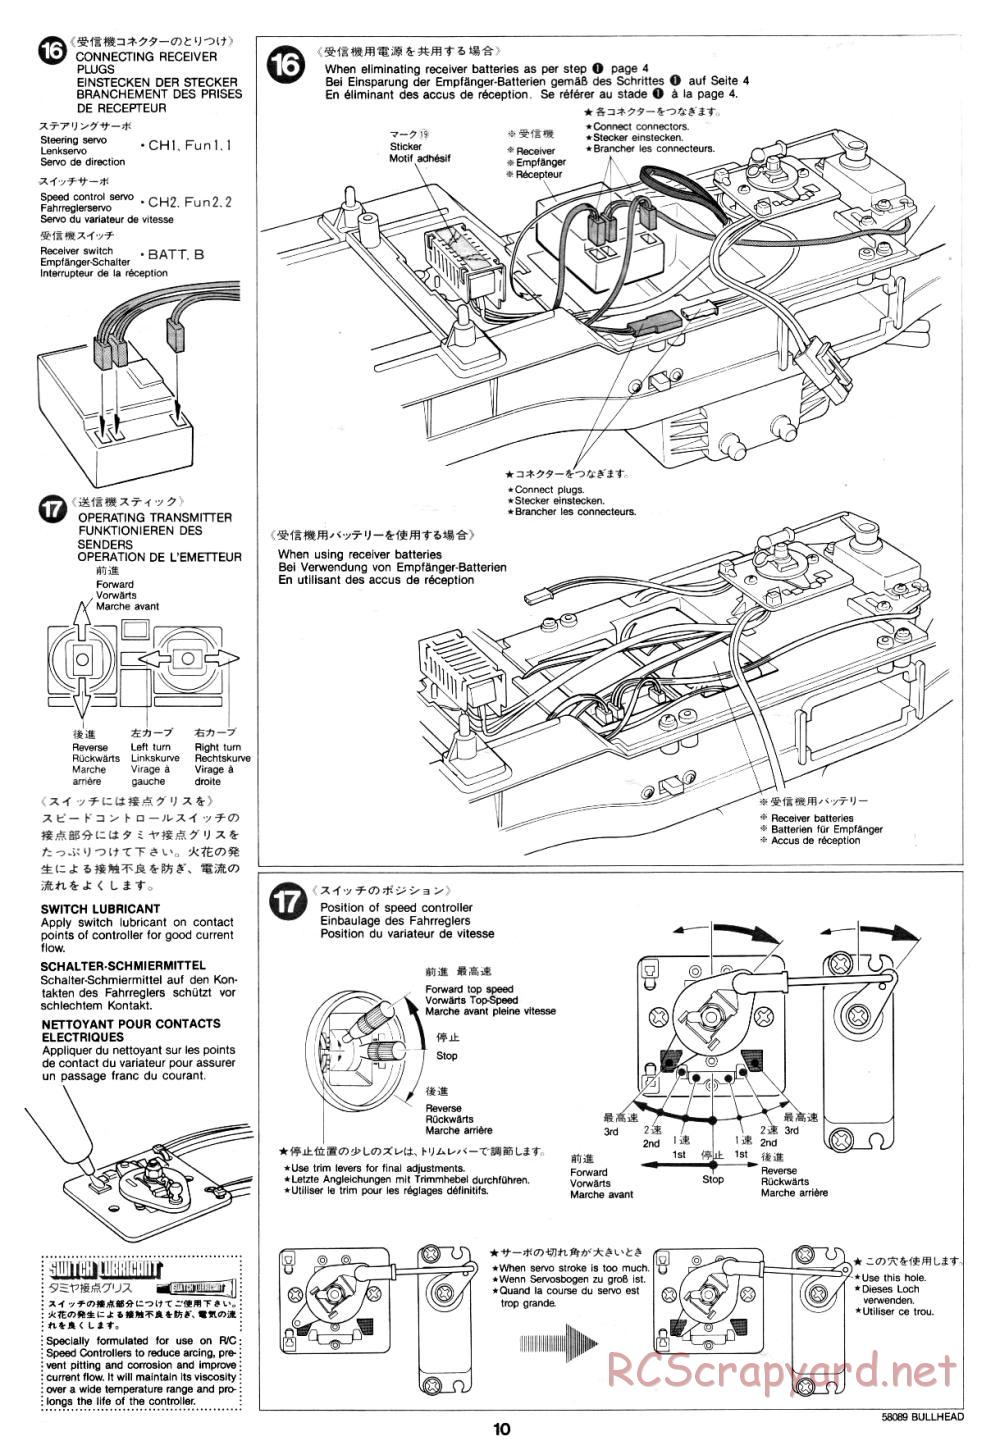 Tamiya - Bullhead - 58089 - Manual - Page 10